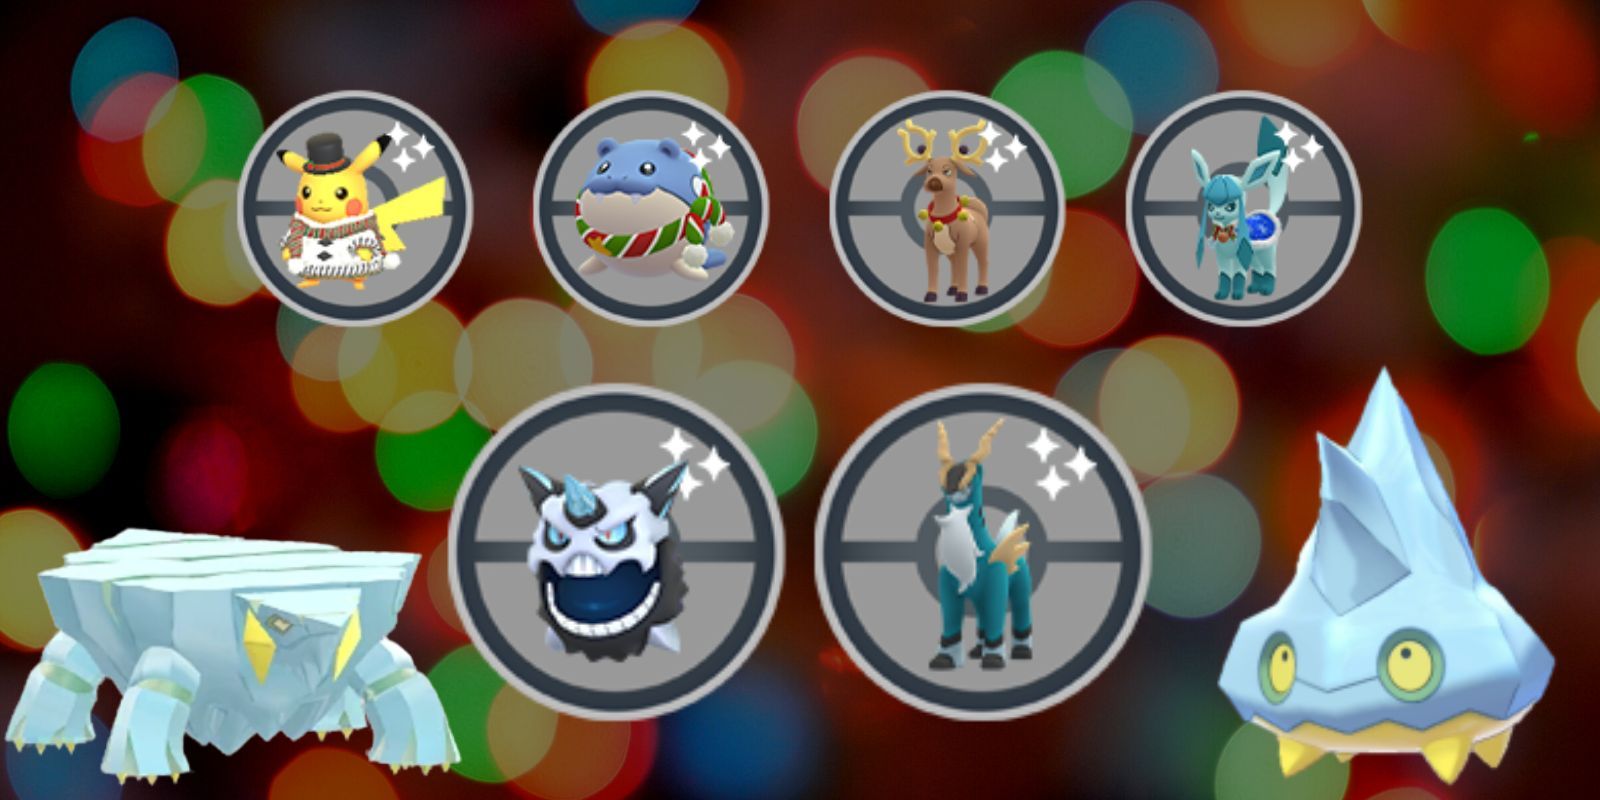 Pokémon especiais que estarão disponíveis durante o evento de férias de inverno do Pokémon GO, incluindo Pikachu e Mega Glalie.